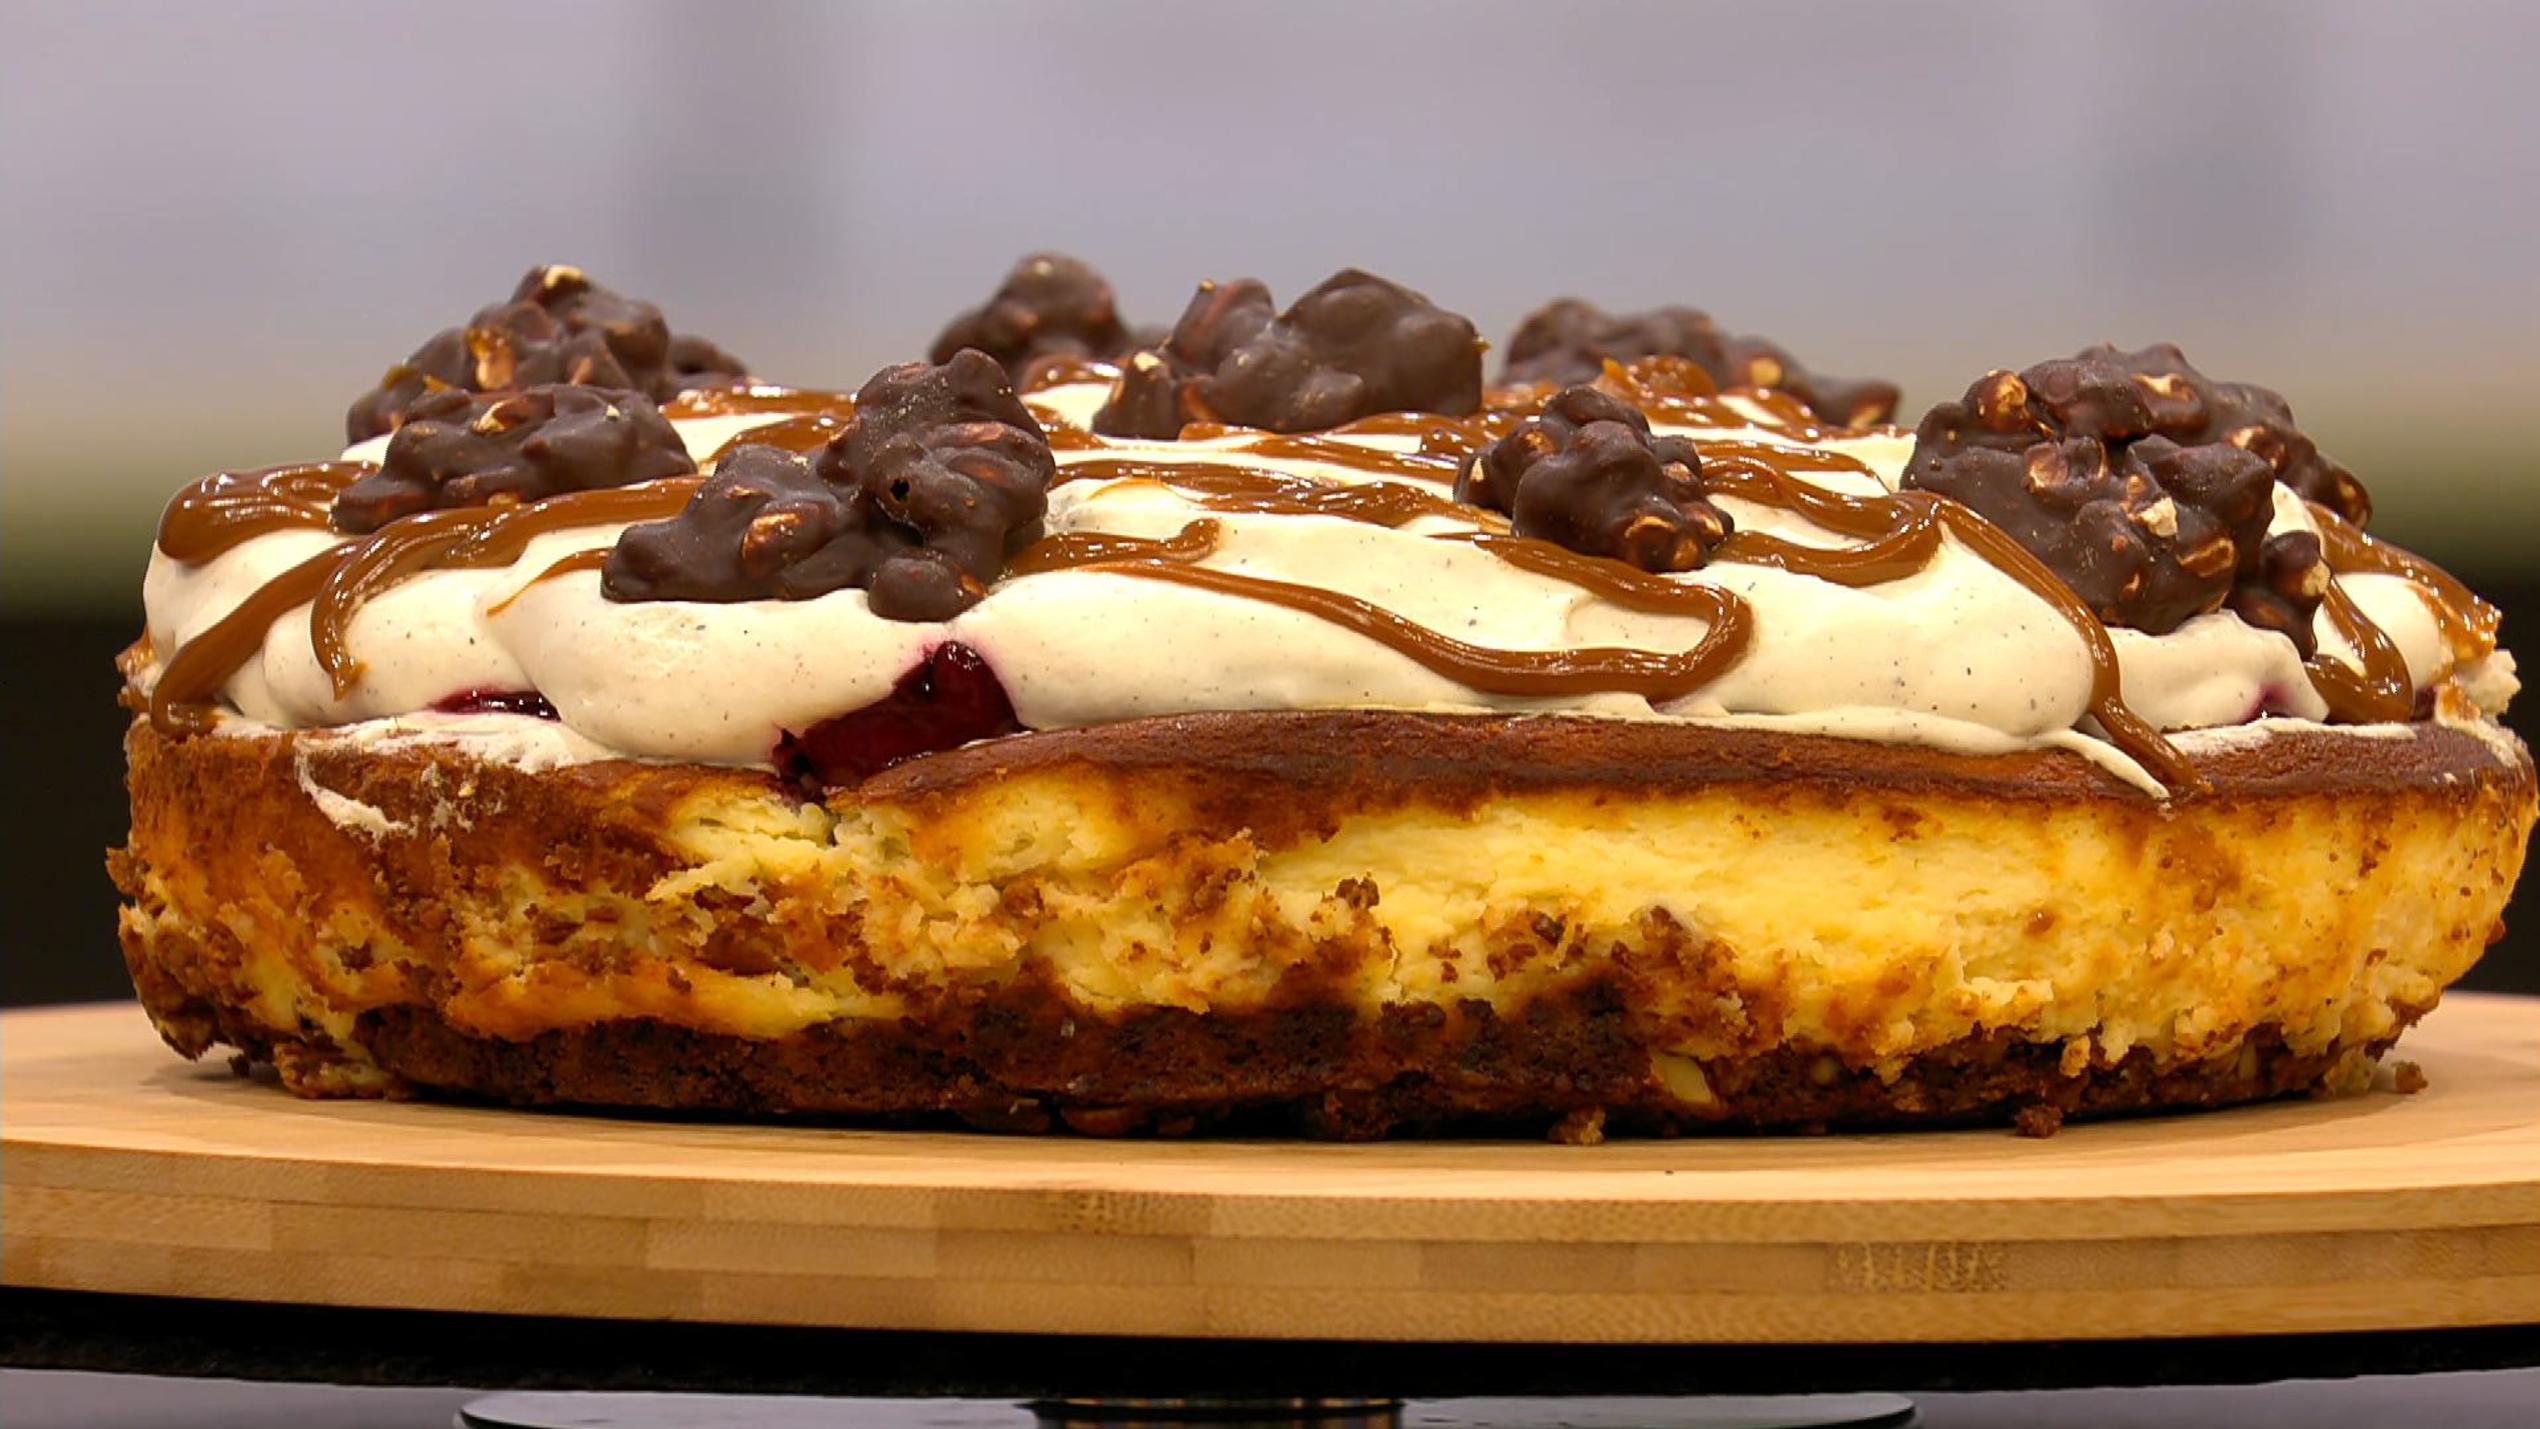 20+ nett Bild Spanische Kuchen - Spanischer Vanille Kuchen Sommer ...